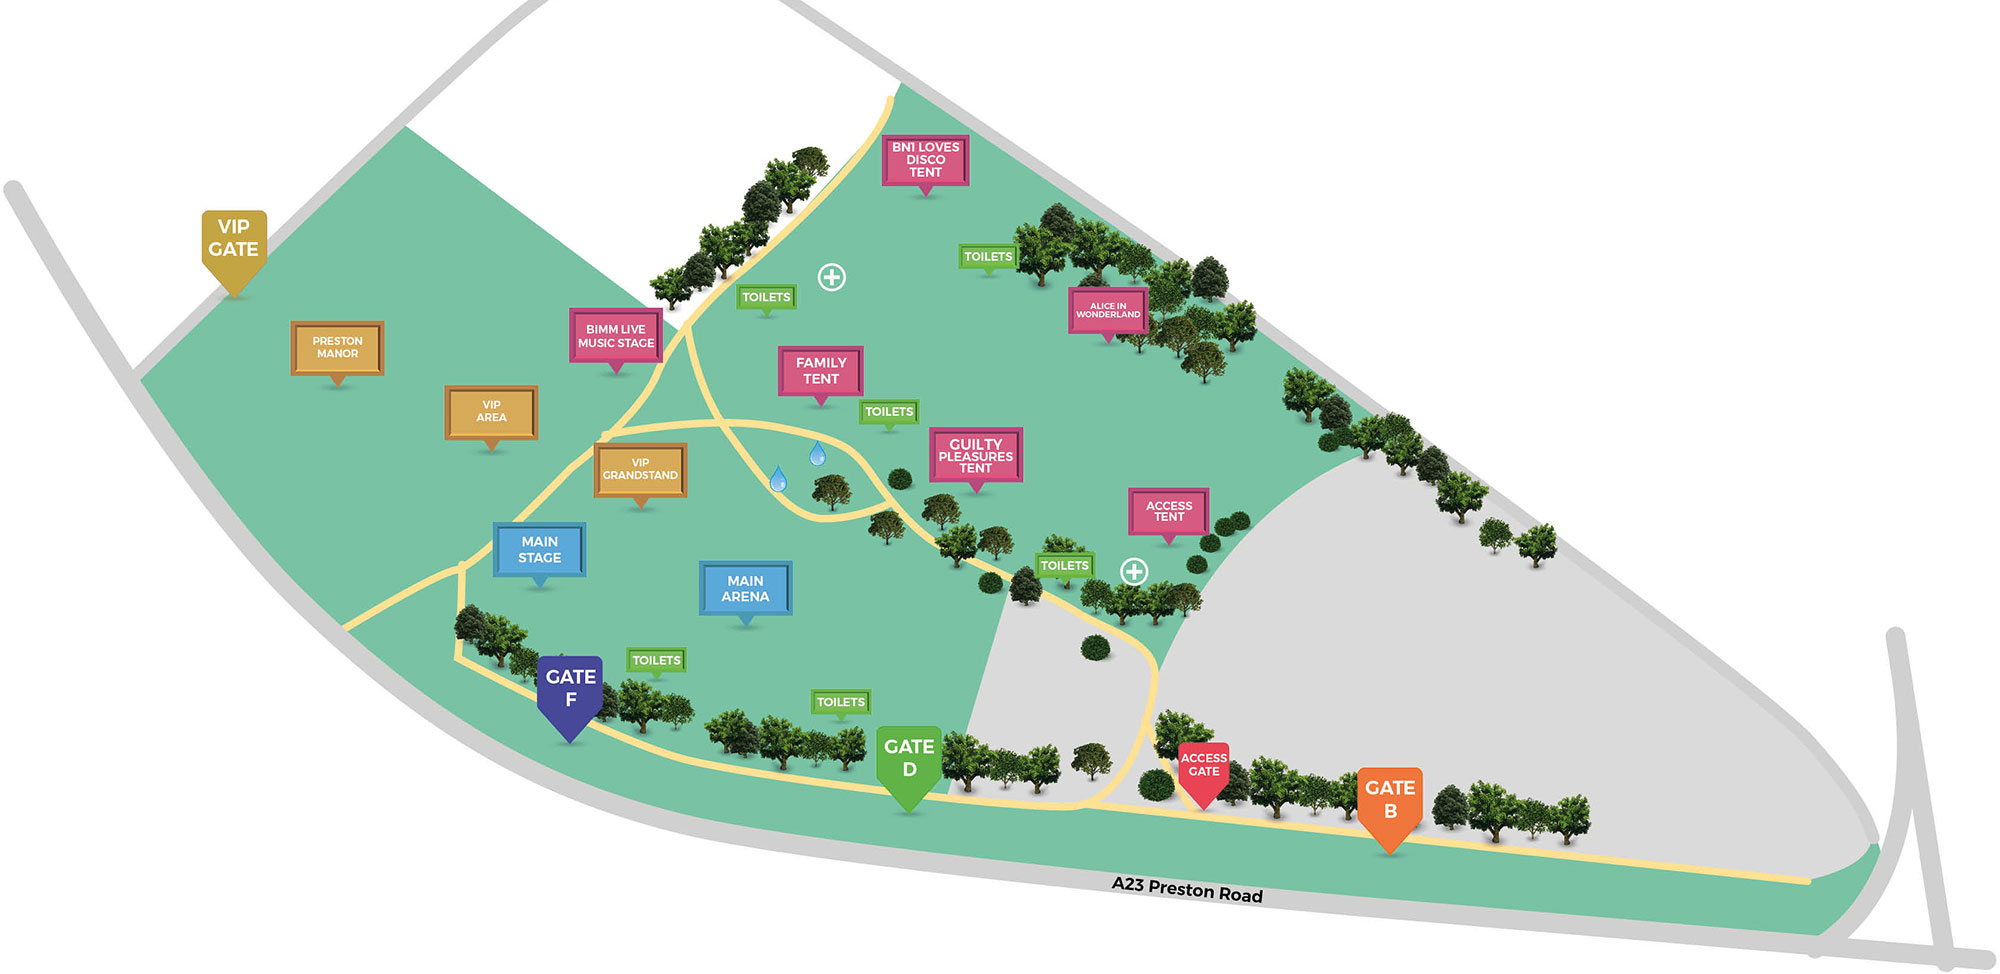 LoveBn1Fest 2018 – Park Map & Line-Ups